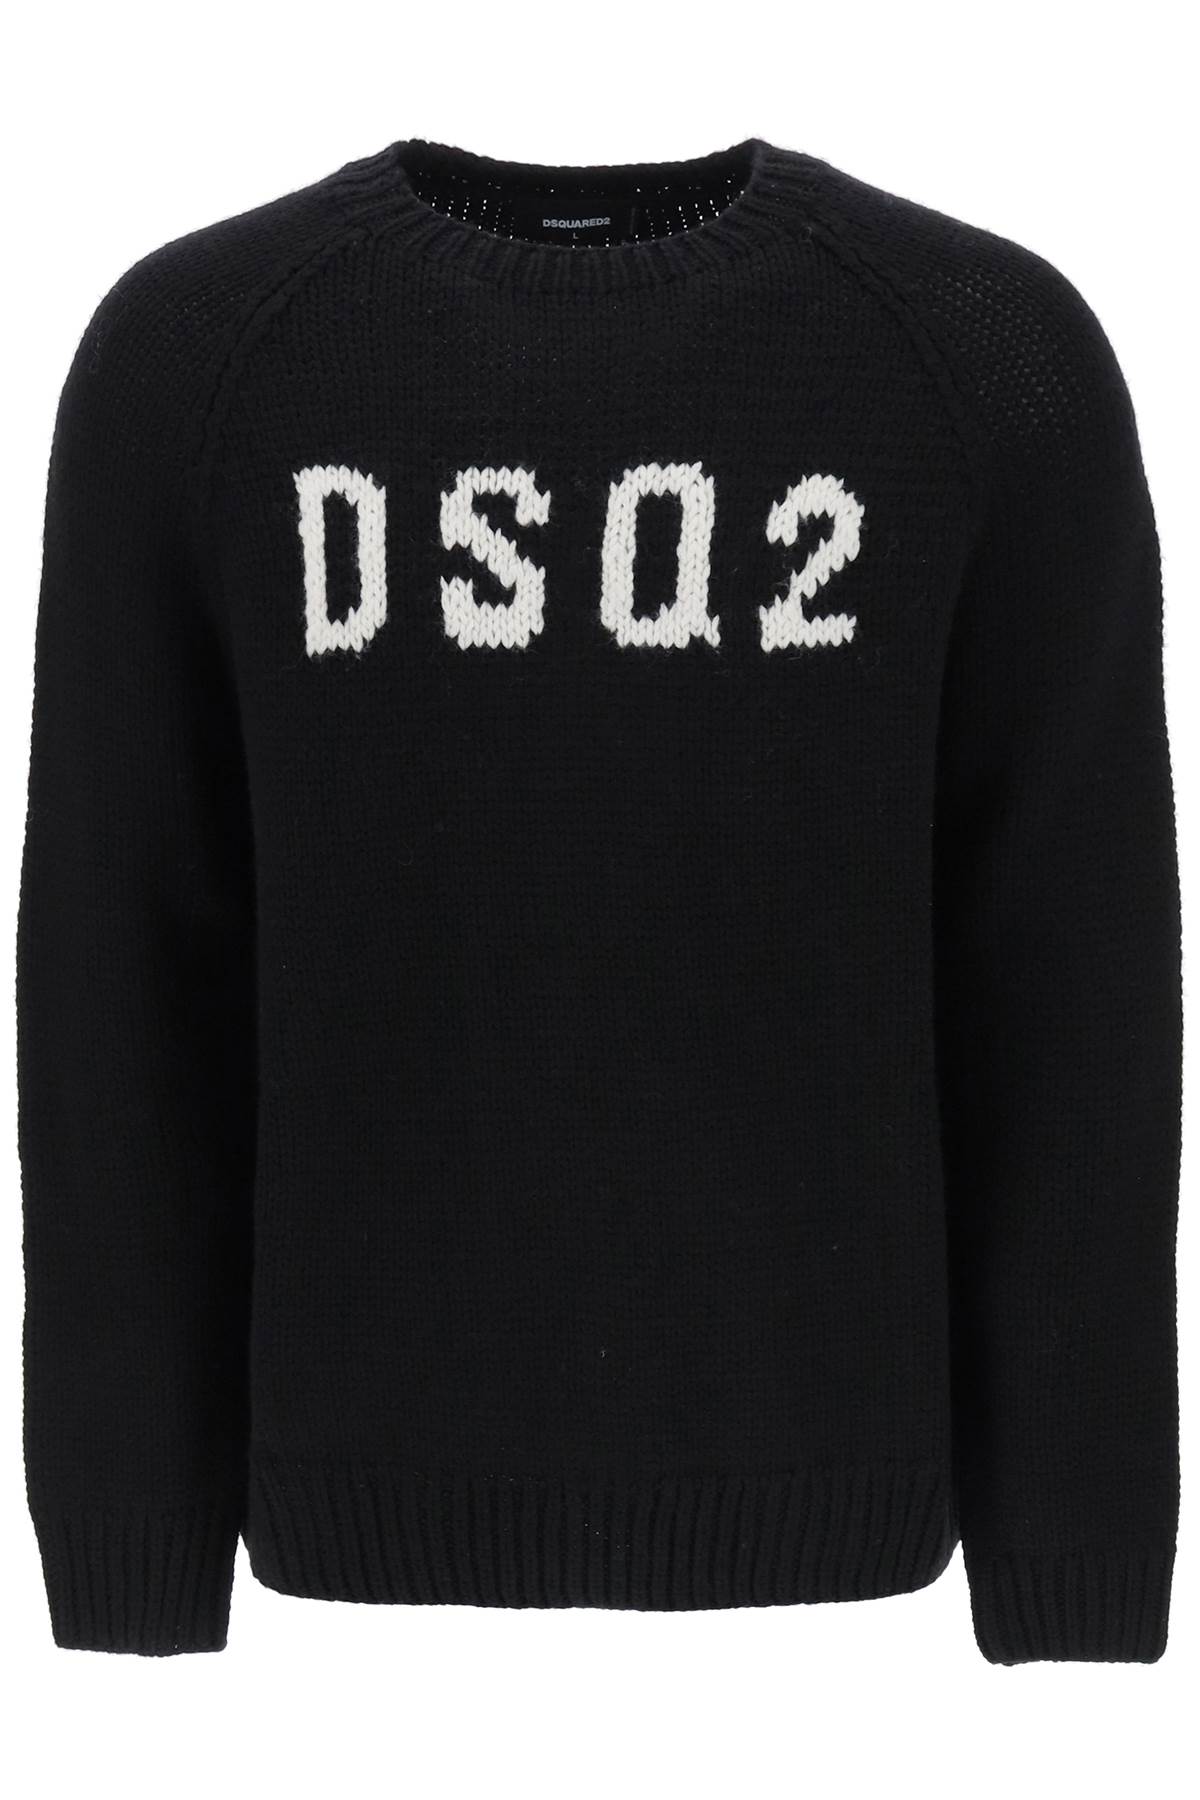 DsquaRed 2 Pullover Sweater dsq2 Wool S71HA1237S18089 Black Sz.L 962BN